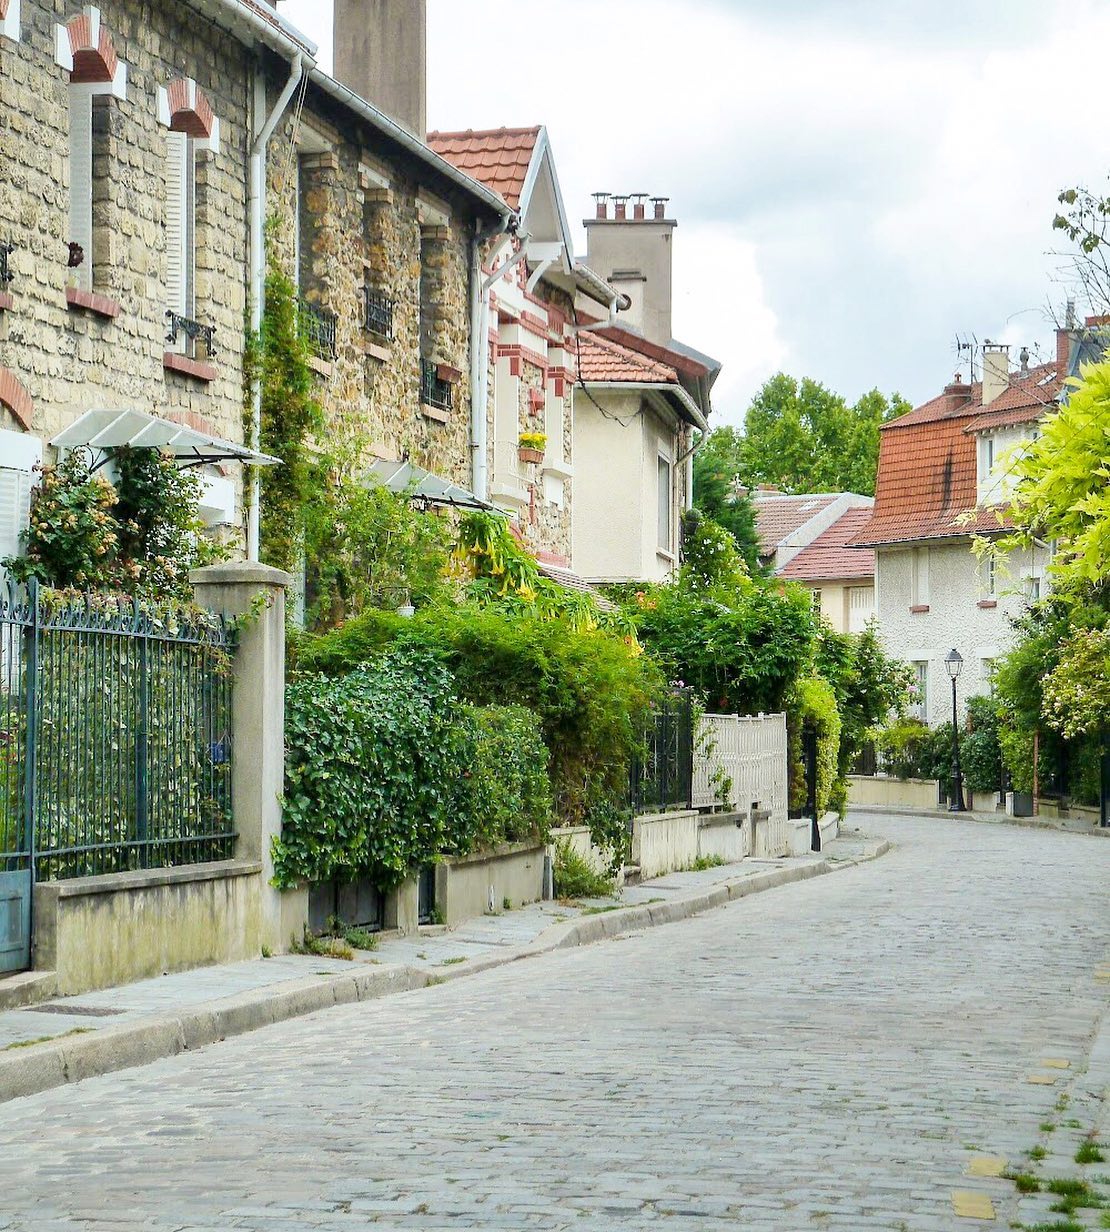 Quand tu apprends que François Hollande et Julie Gayet se sont dit oui, tu postes une photo de leur quartier : la Campagne à Paris 🌿
Si ça vous tente, j'en ai parlé (du quartier) dans un article sur le blog l'an dernier.
.
#francefr #hello_france #lacampagneaparis #francoishollande #lumixfr #super_france #paris_vacations #parisjetaime #kings_villages #pariscaché #parissecret #vivreparis